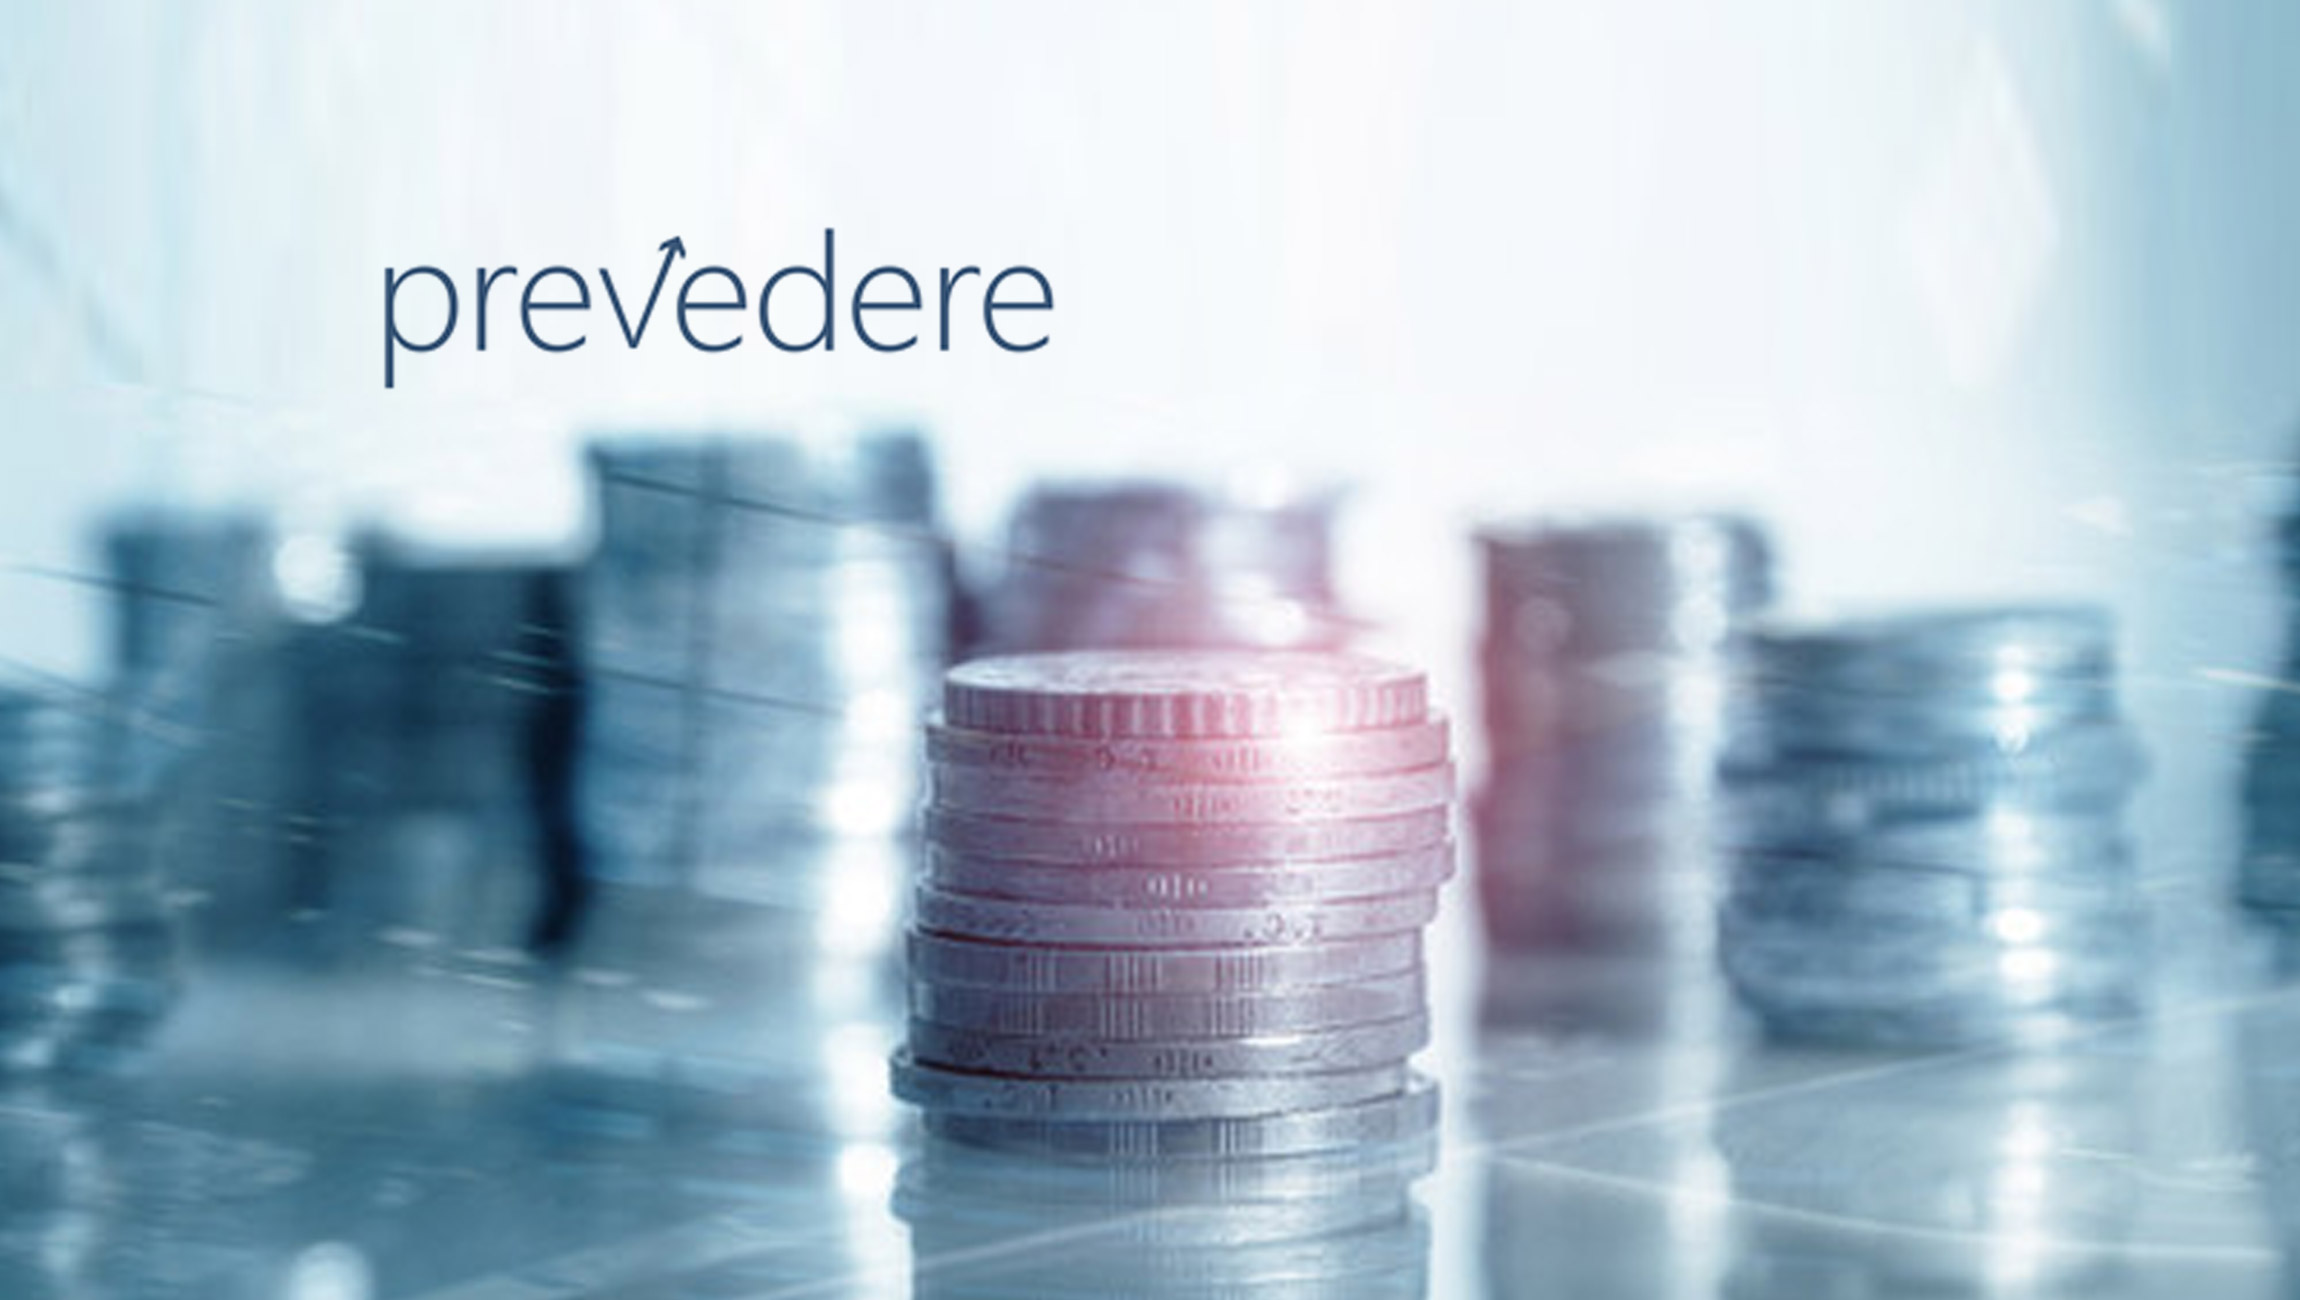 Prevedere Raises $25 Million in Strategic Financing Funding